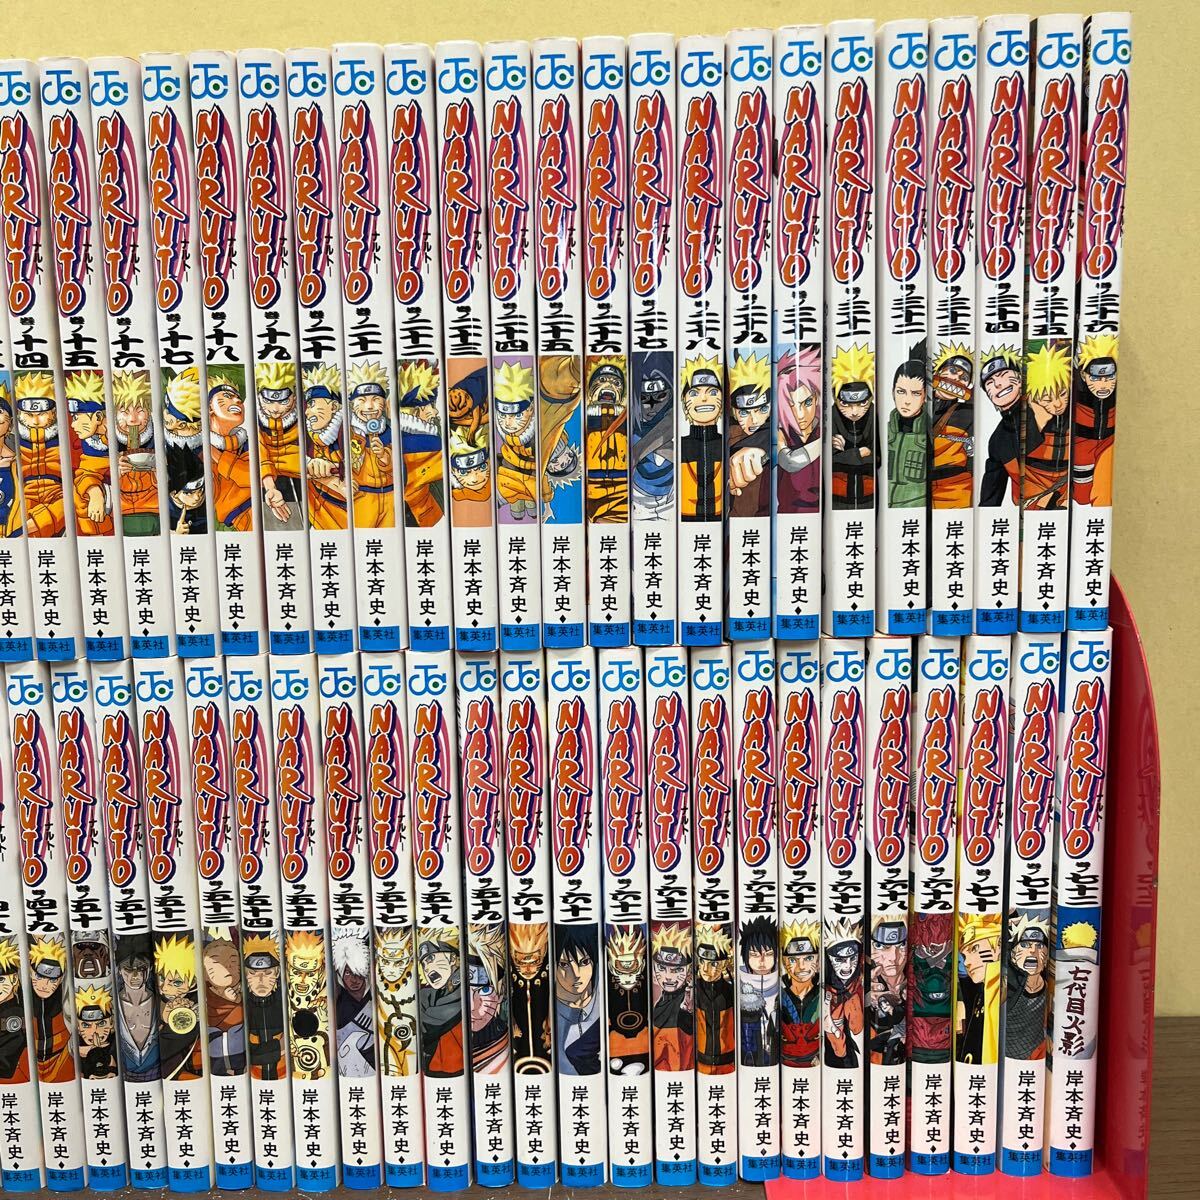 NARUTO Naruto (Наруто) все 72 шт комплект .книга@. история Shueisha JUMP еженедельный Shonen Jump Jump комиксы / старая книга / не чистка не осмотр товар / состояние. на фото проверка ./NC.